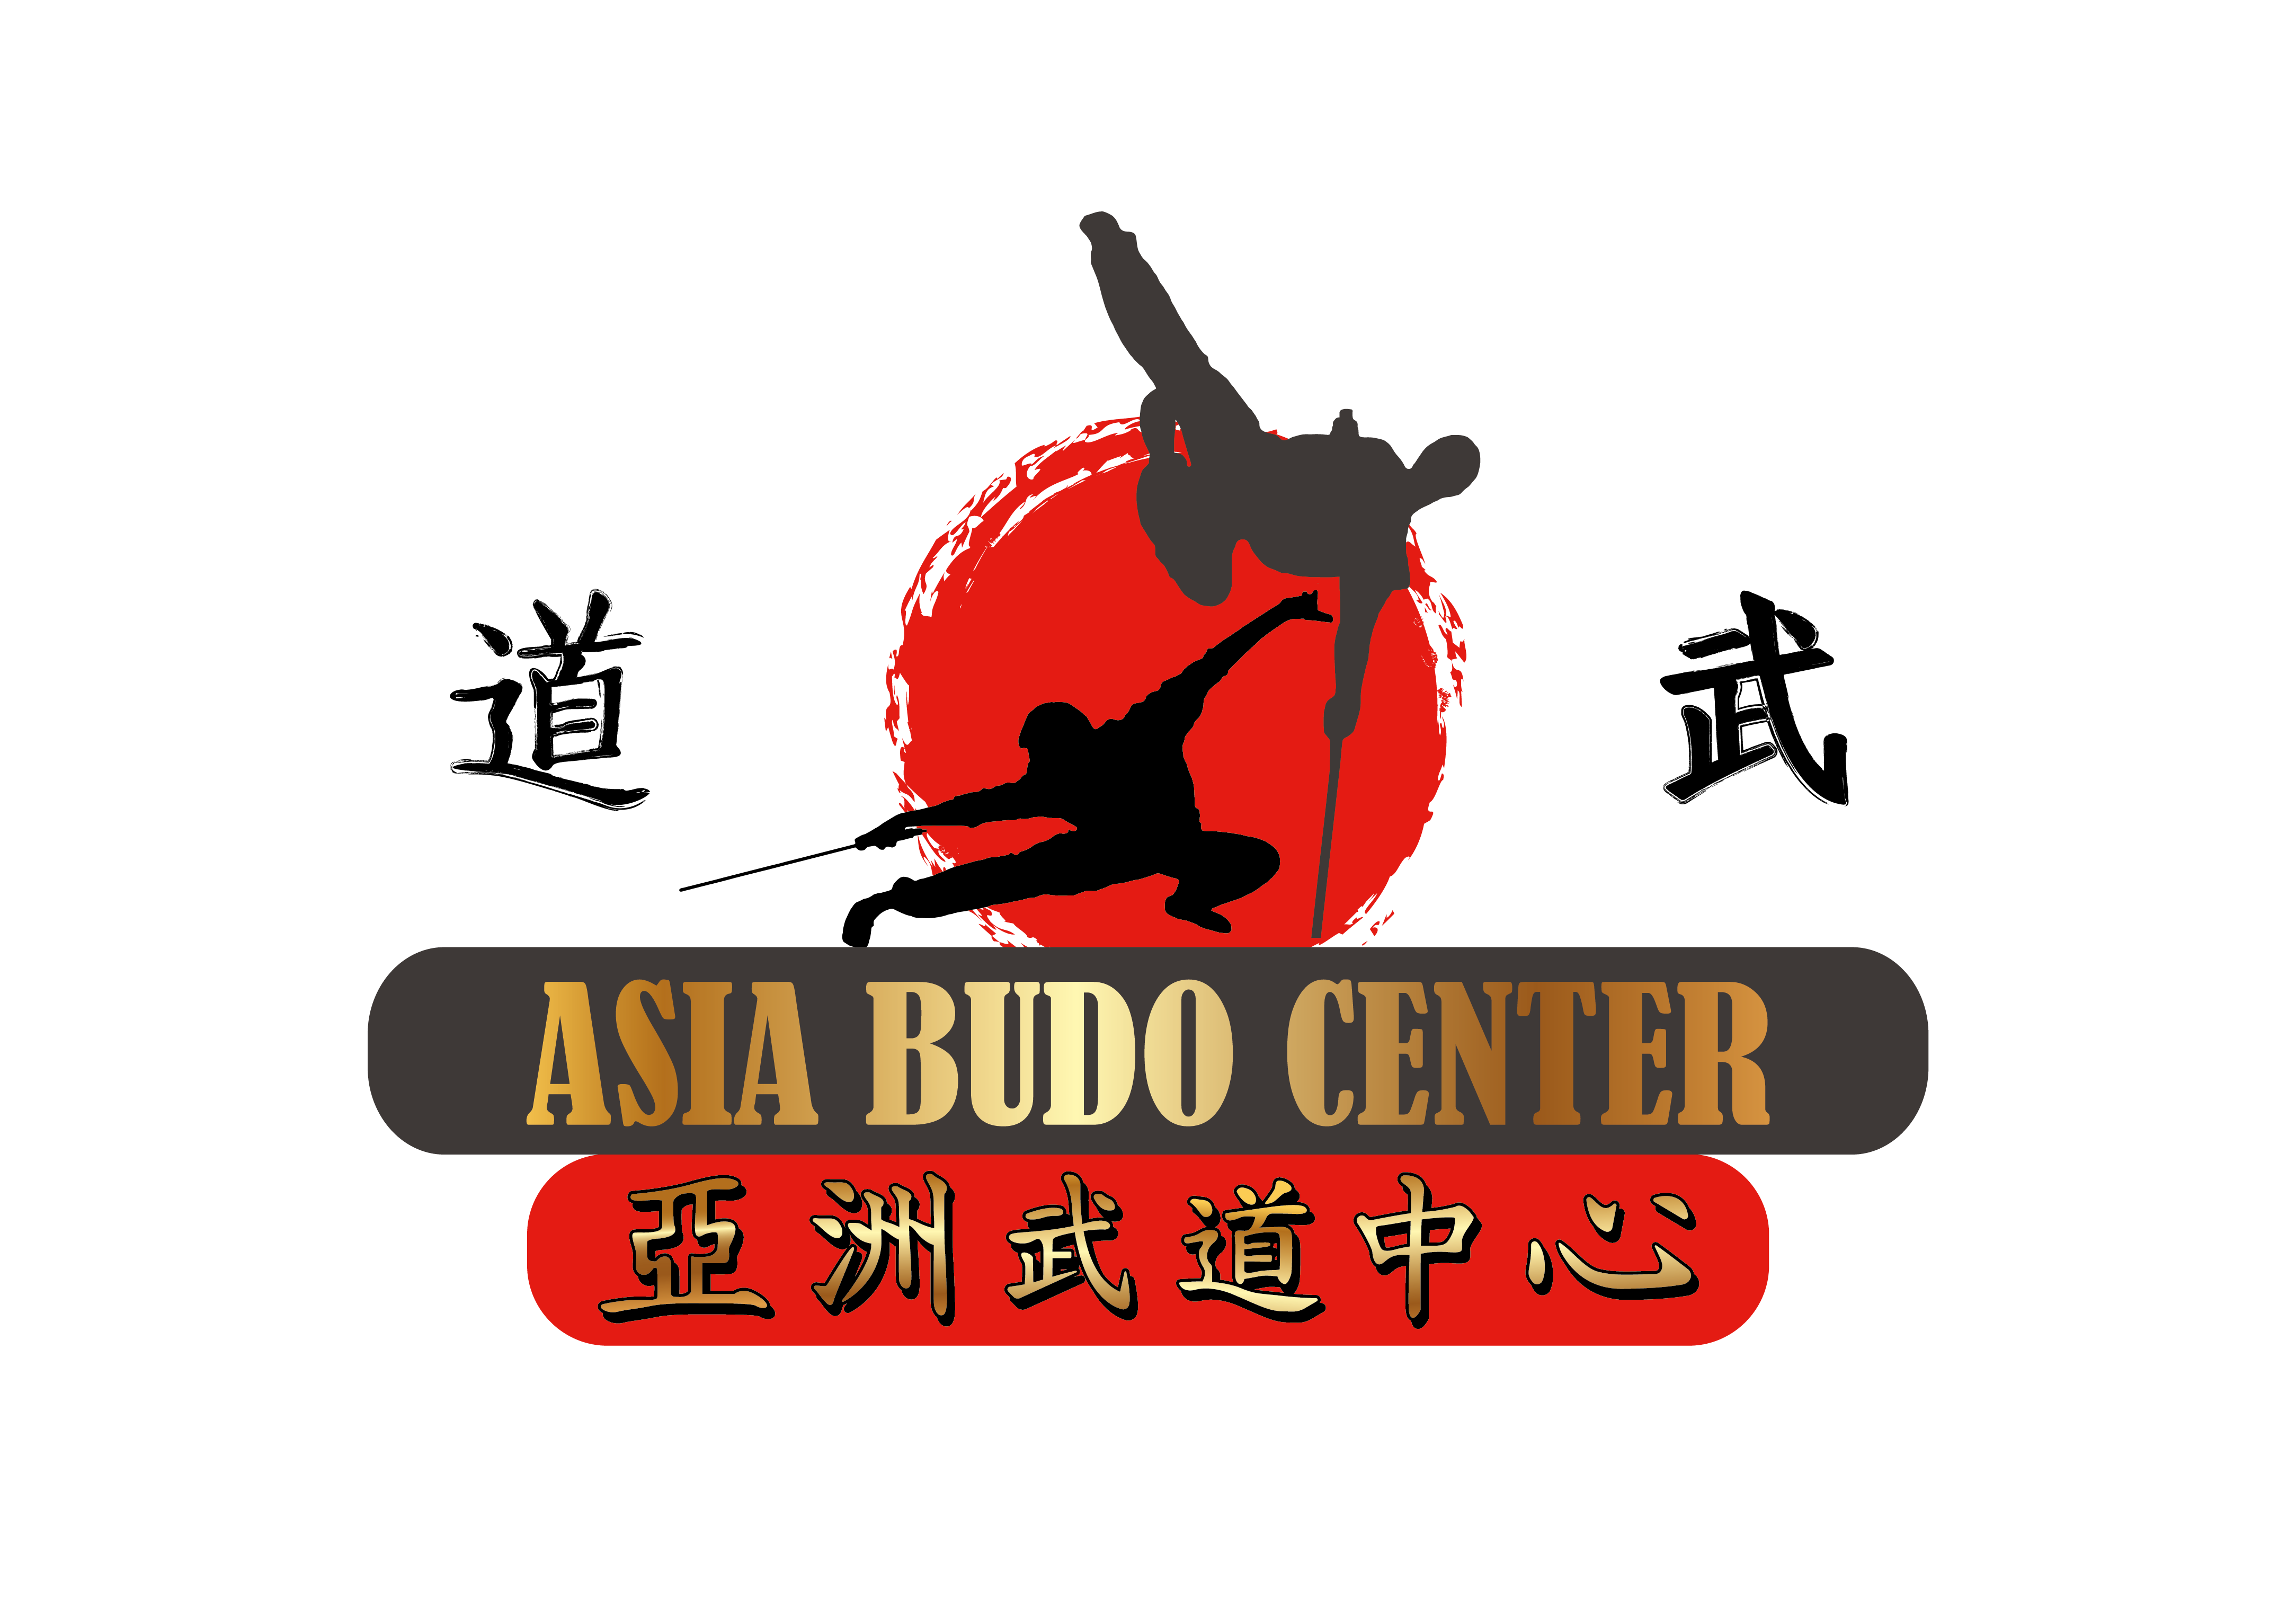 Asia Budo Center